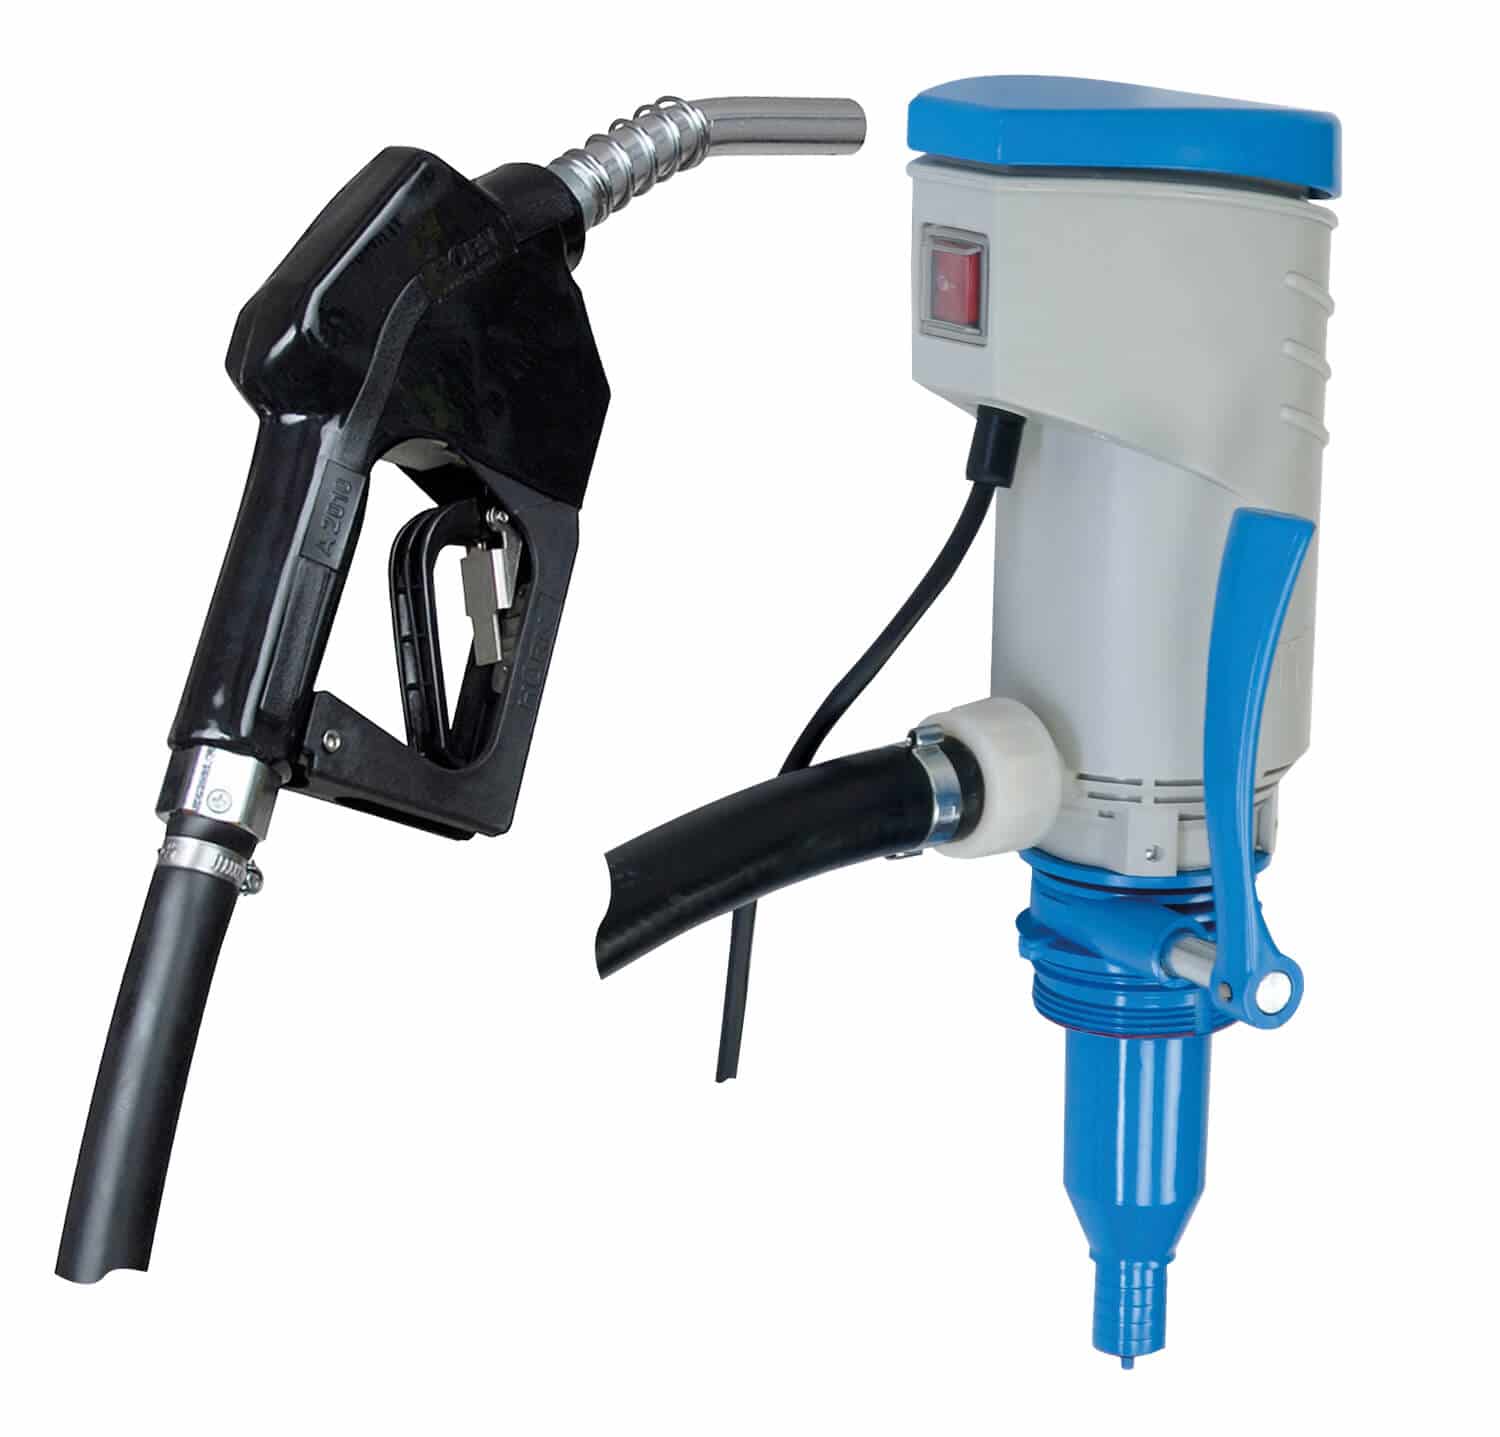 Elektrische Förderpumpe (24 V) mit Automatik-Zapfpistole für die Medien Diesel und Heizöl.